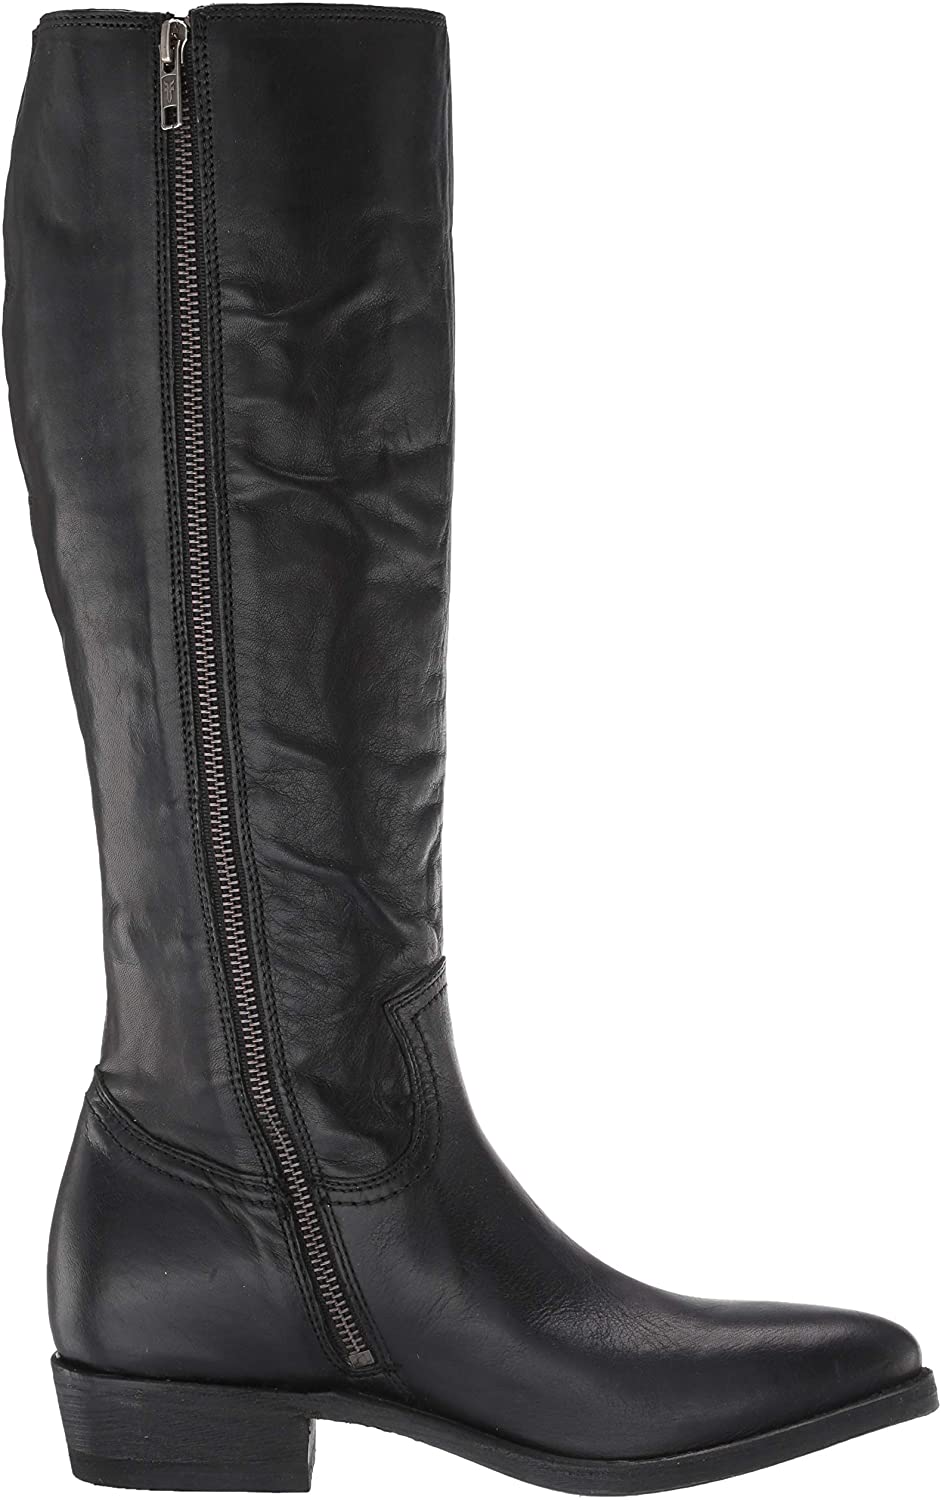 FRYE Billy Women's Black Tall Zip Western Boots | eBay